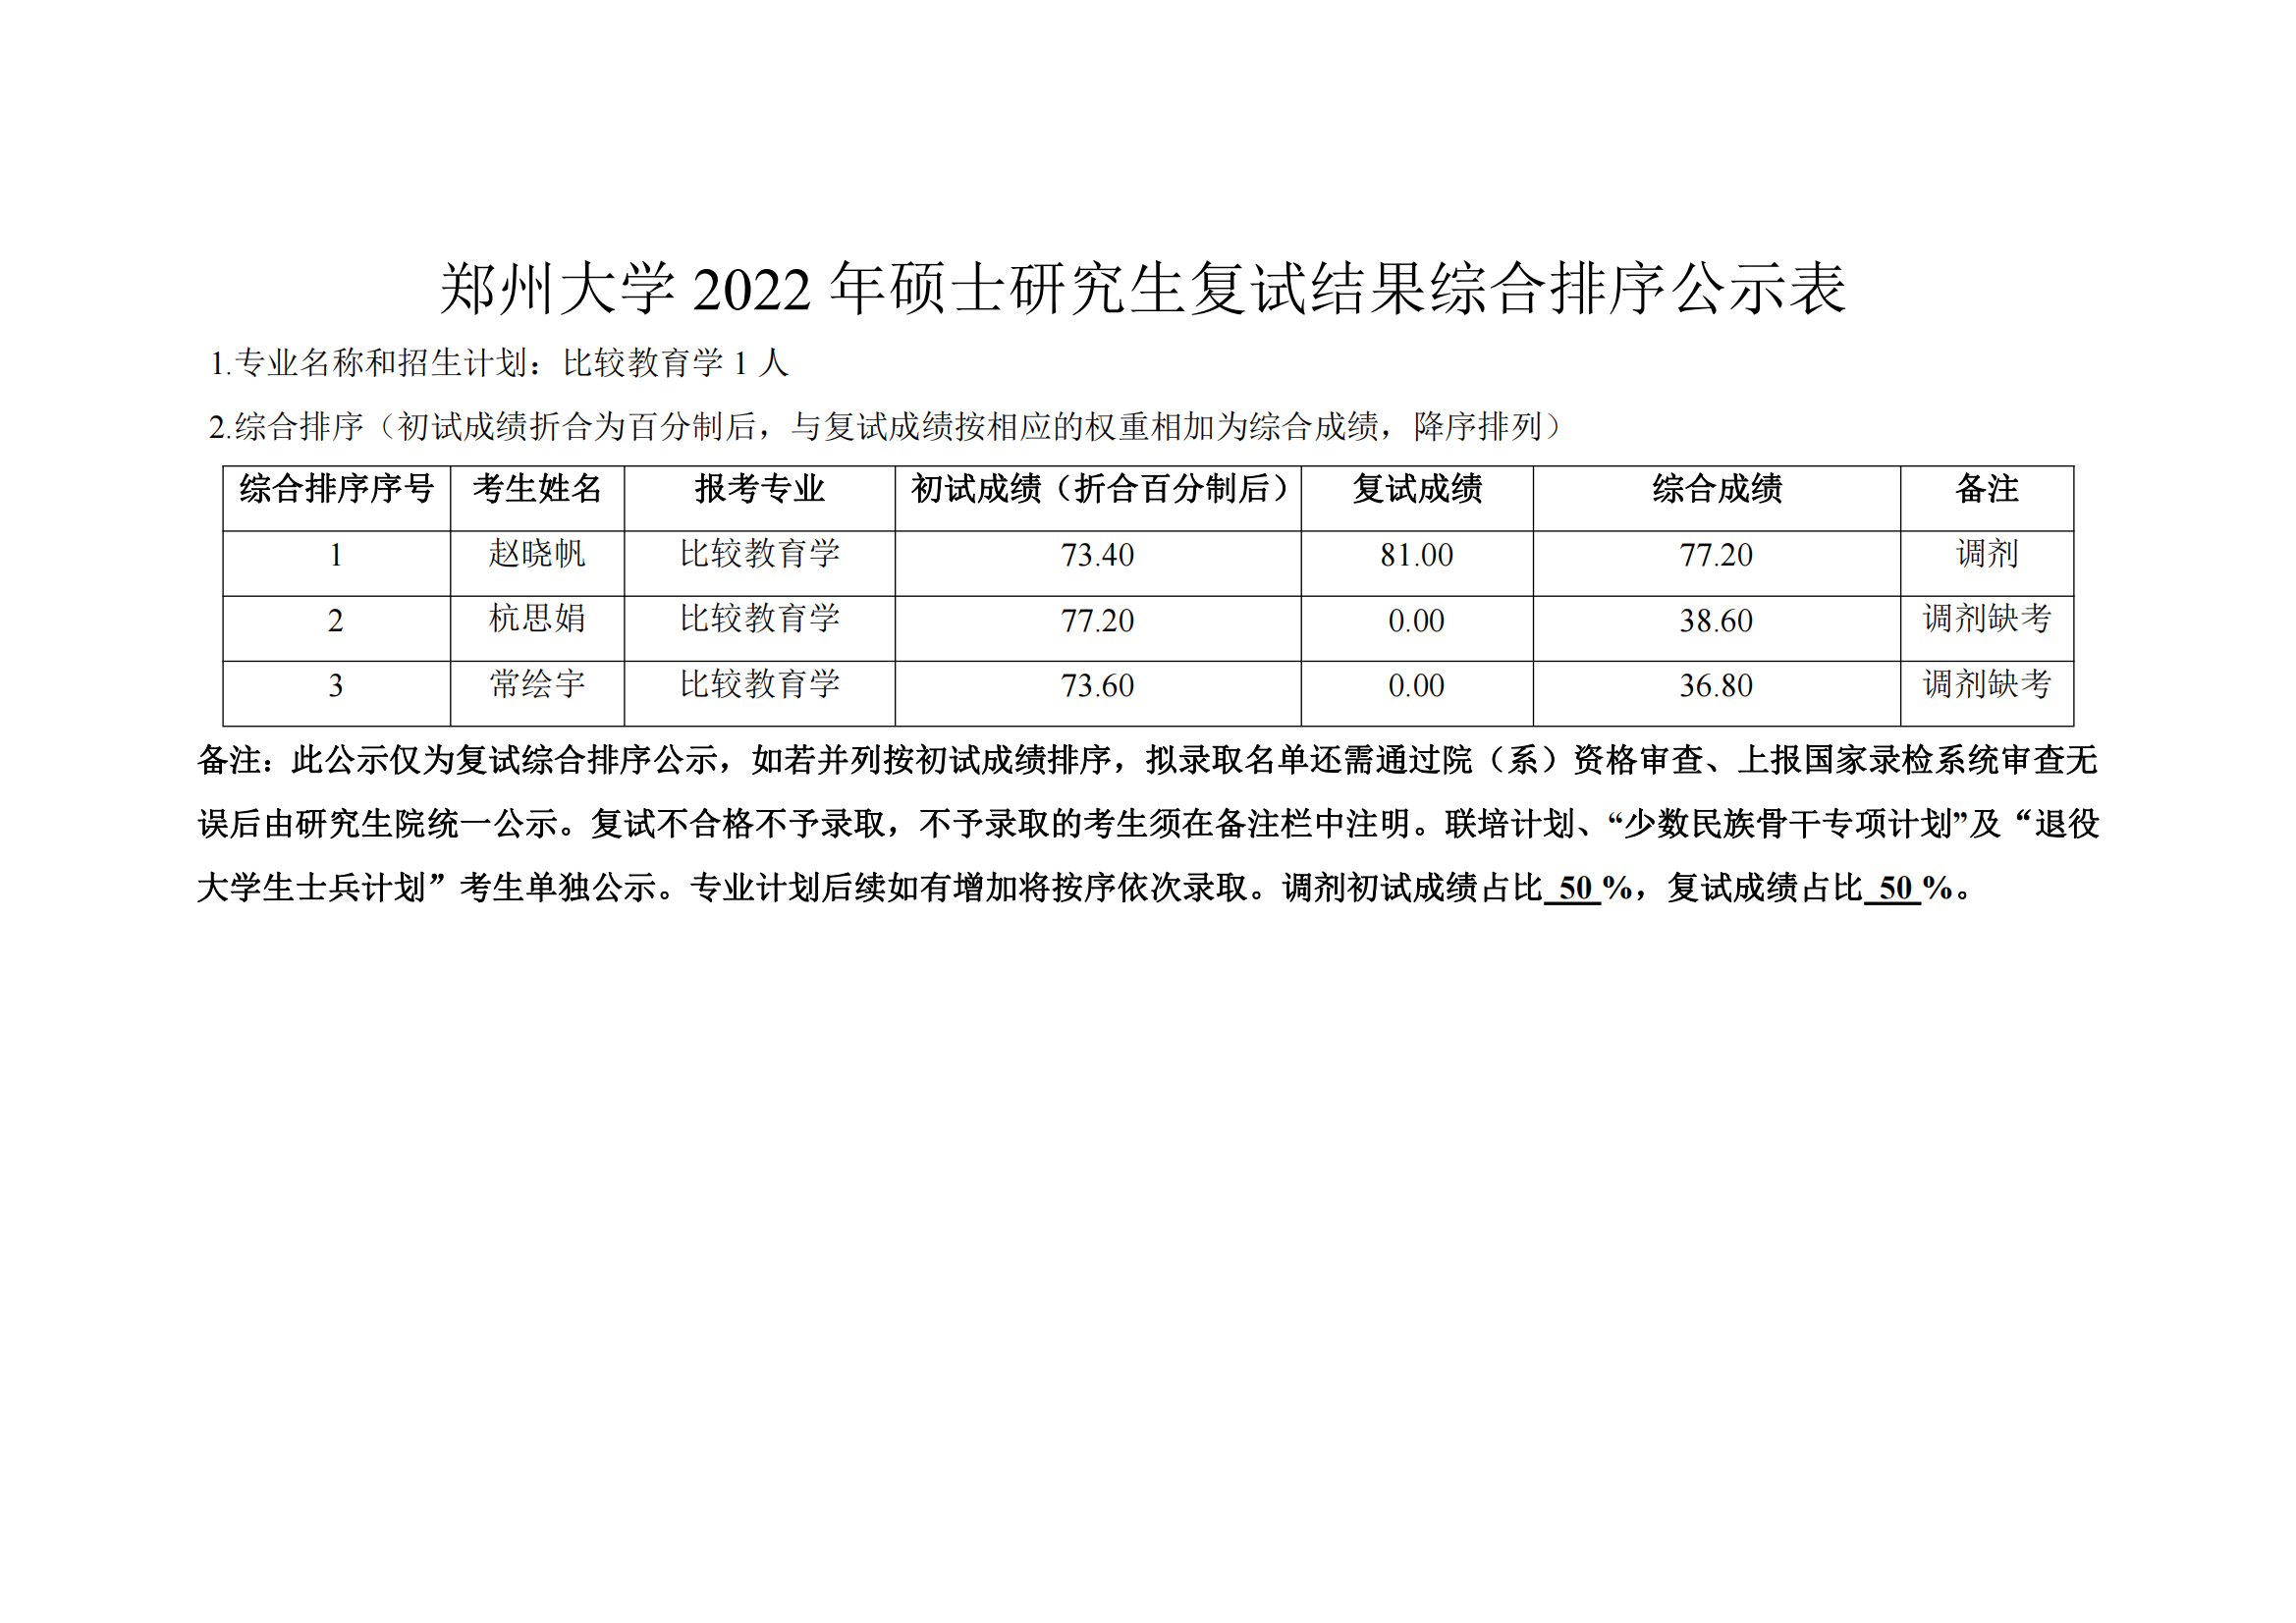 郑州大学2022年硕士研究生复试结果综合排序公示表 第二批_00.png